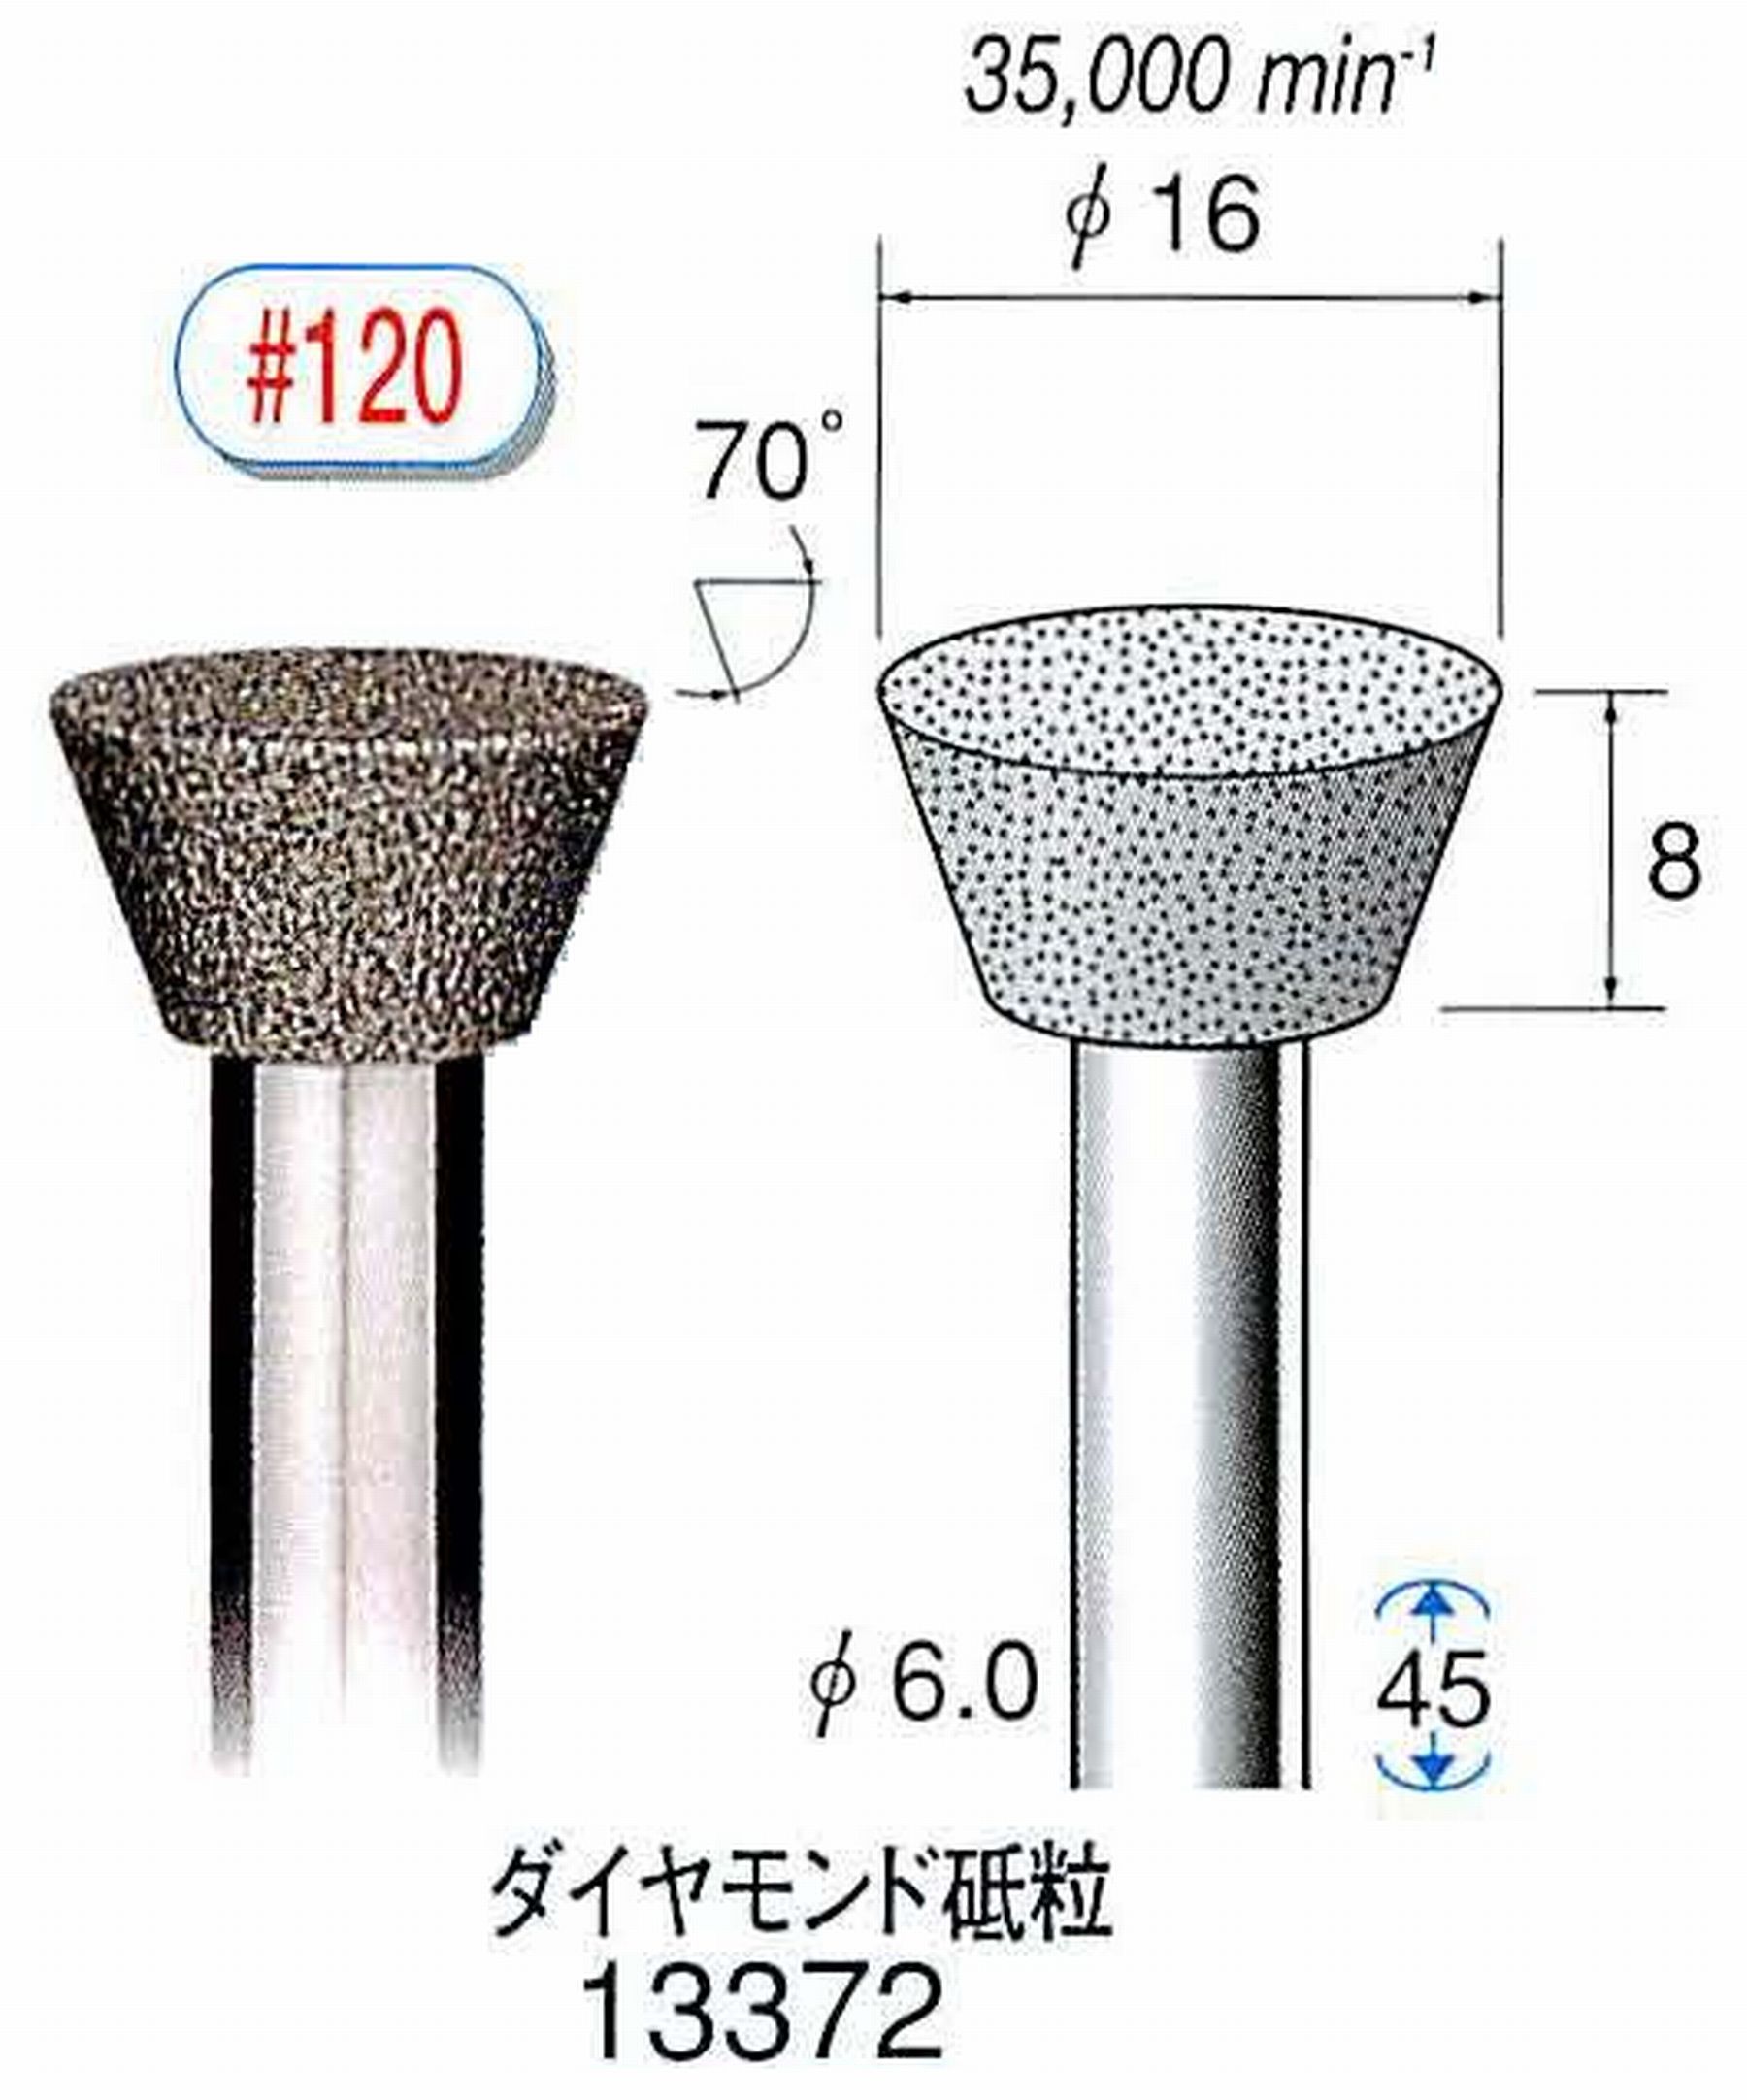 ナカニシ/NAKANISHI 電着ダイヤモンド ダイヤモンド砥粒 軸径(シャンク)φ6.0mm 13372